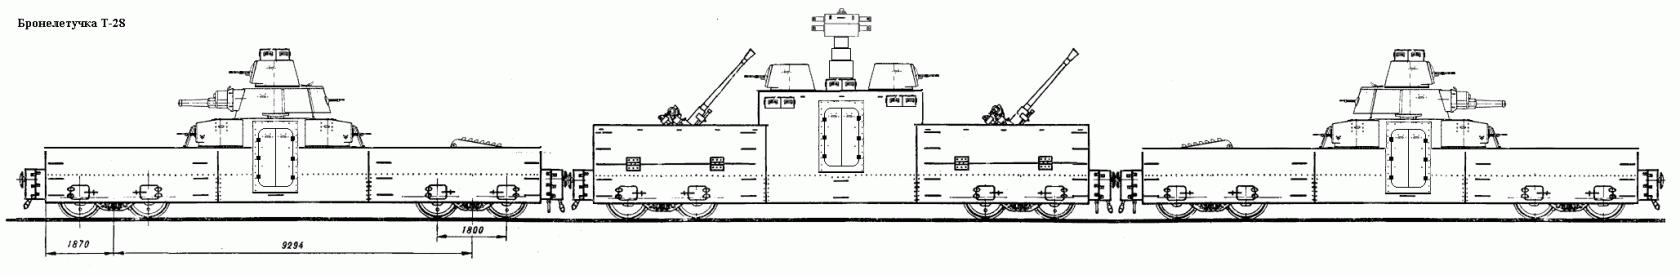 Бронелетучки Т-28 и Т-35. Проект переделки танков Т-28 и Т-35 в бронелетучки.